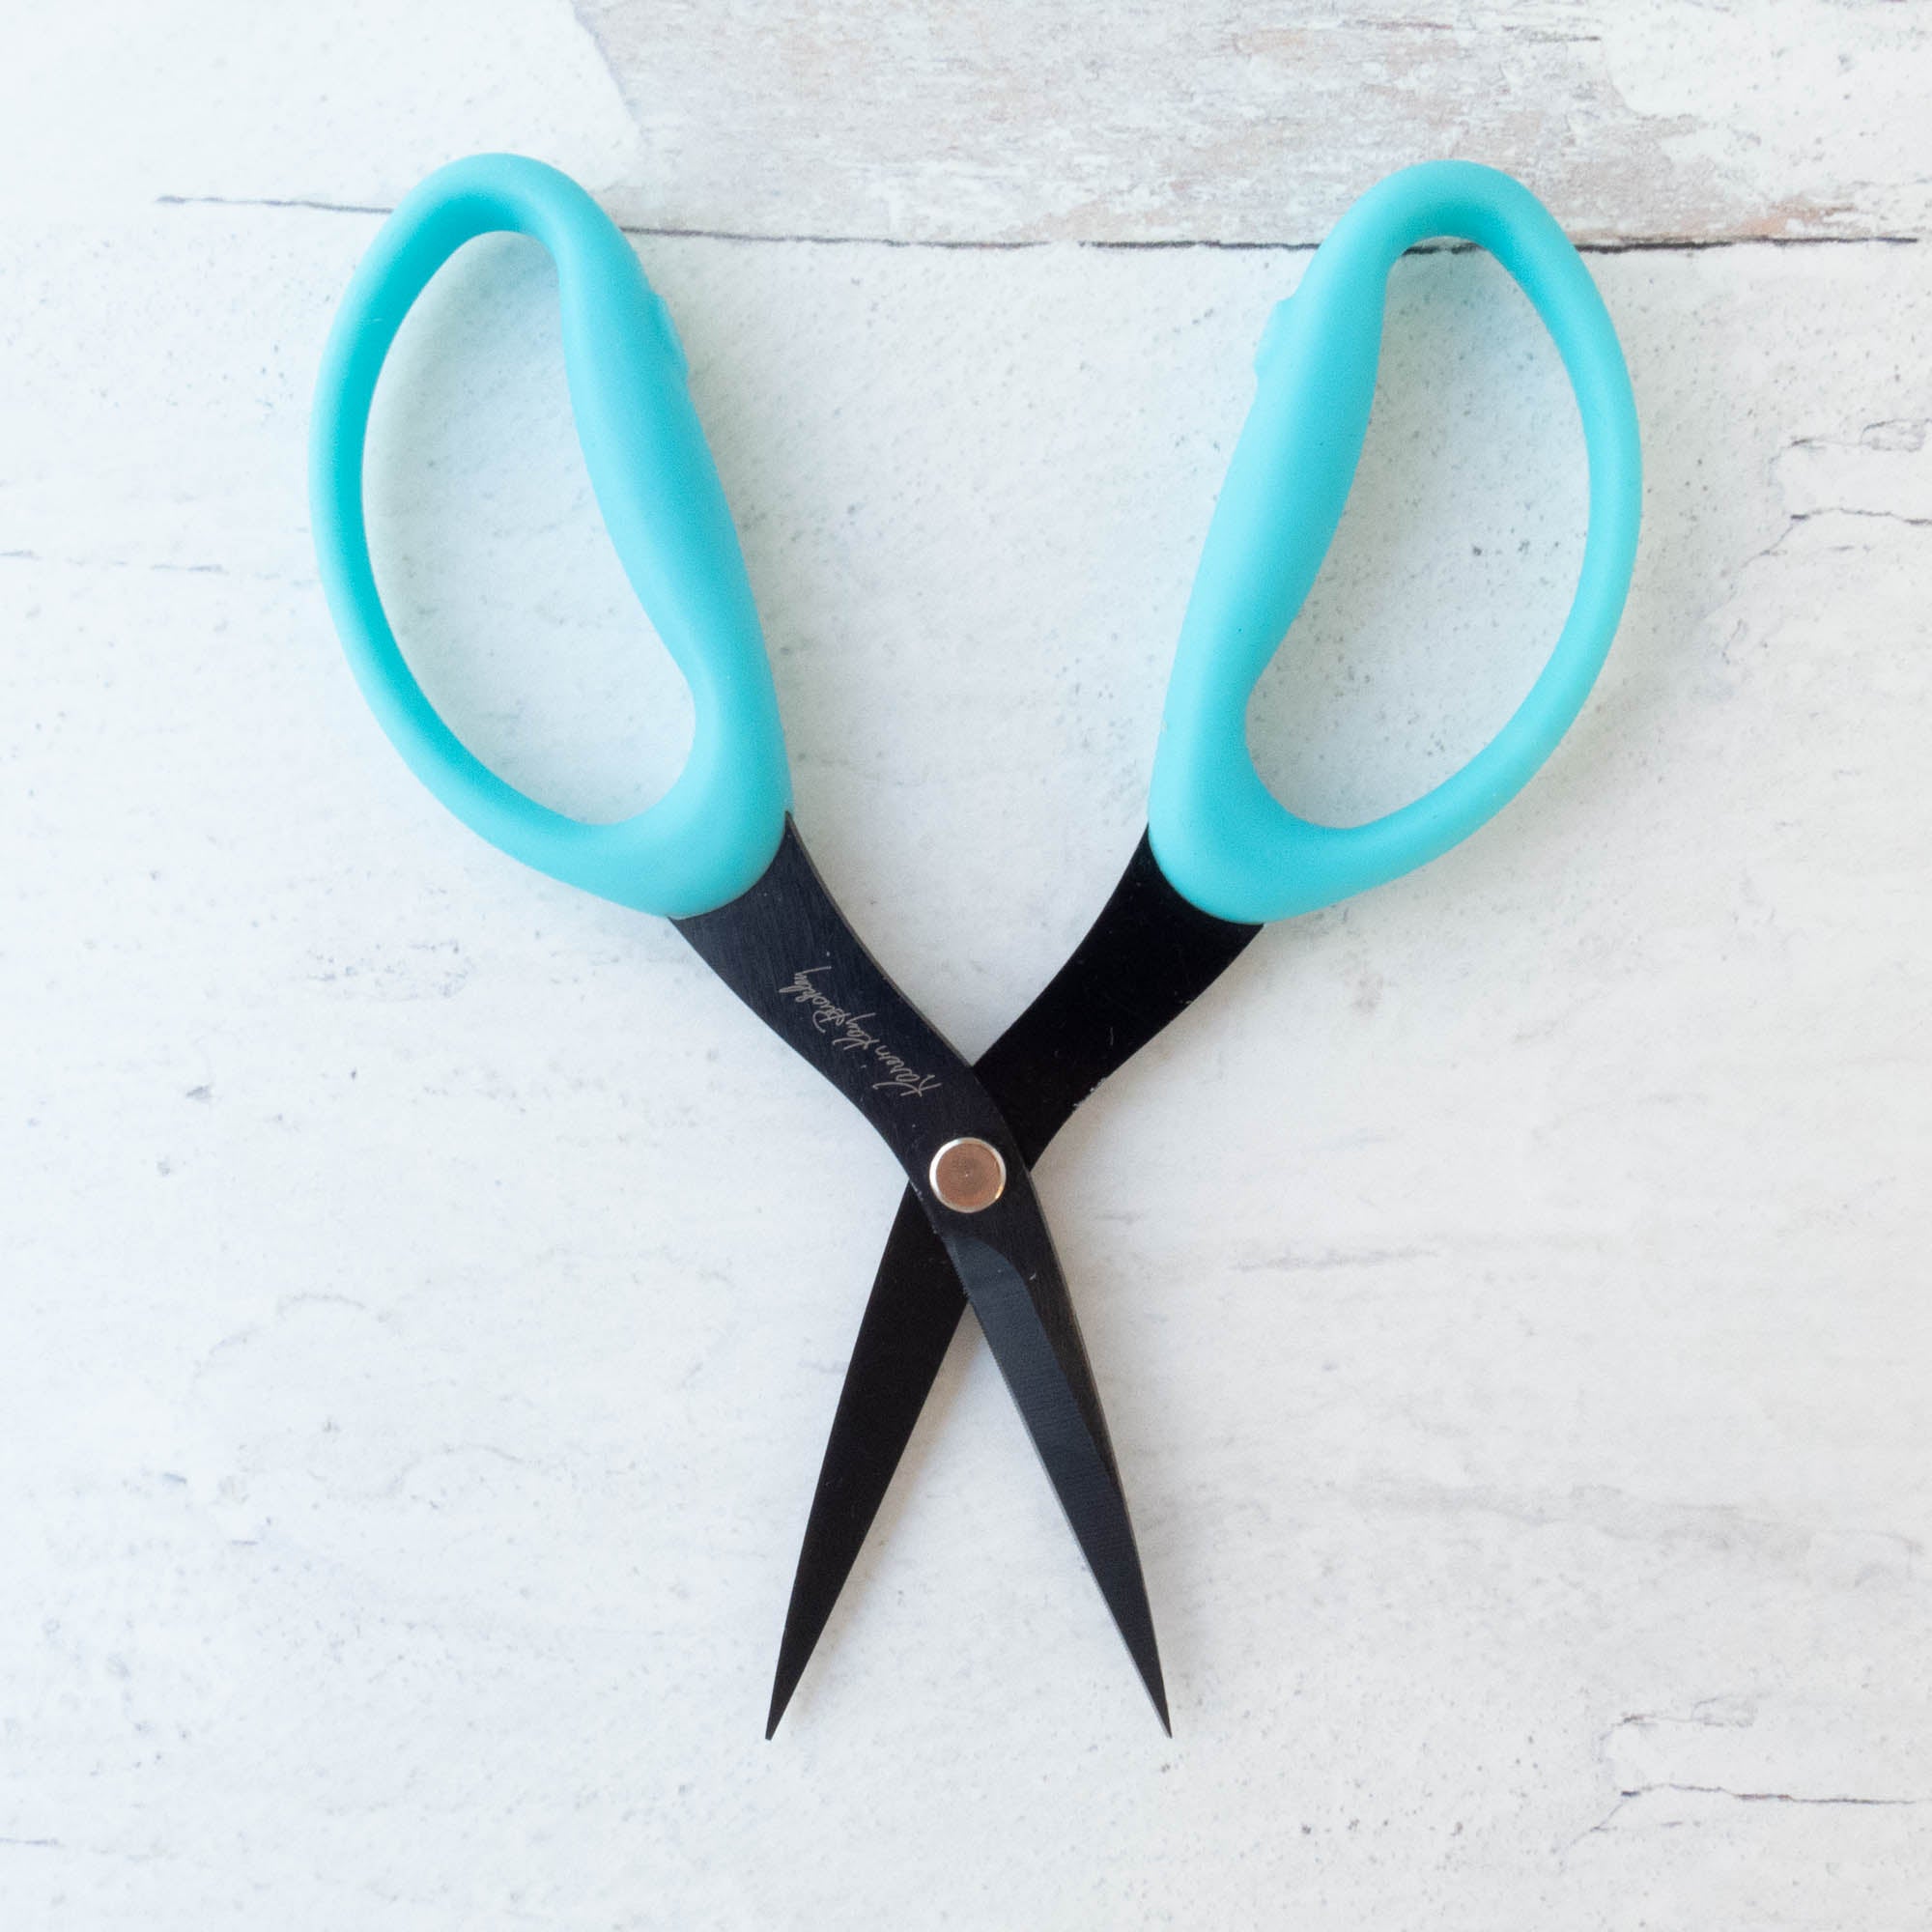 Karen Kay Buckley's “Perfect Scissors” – Cool Tools